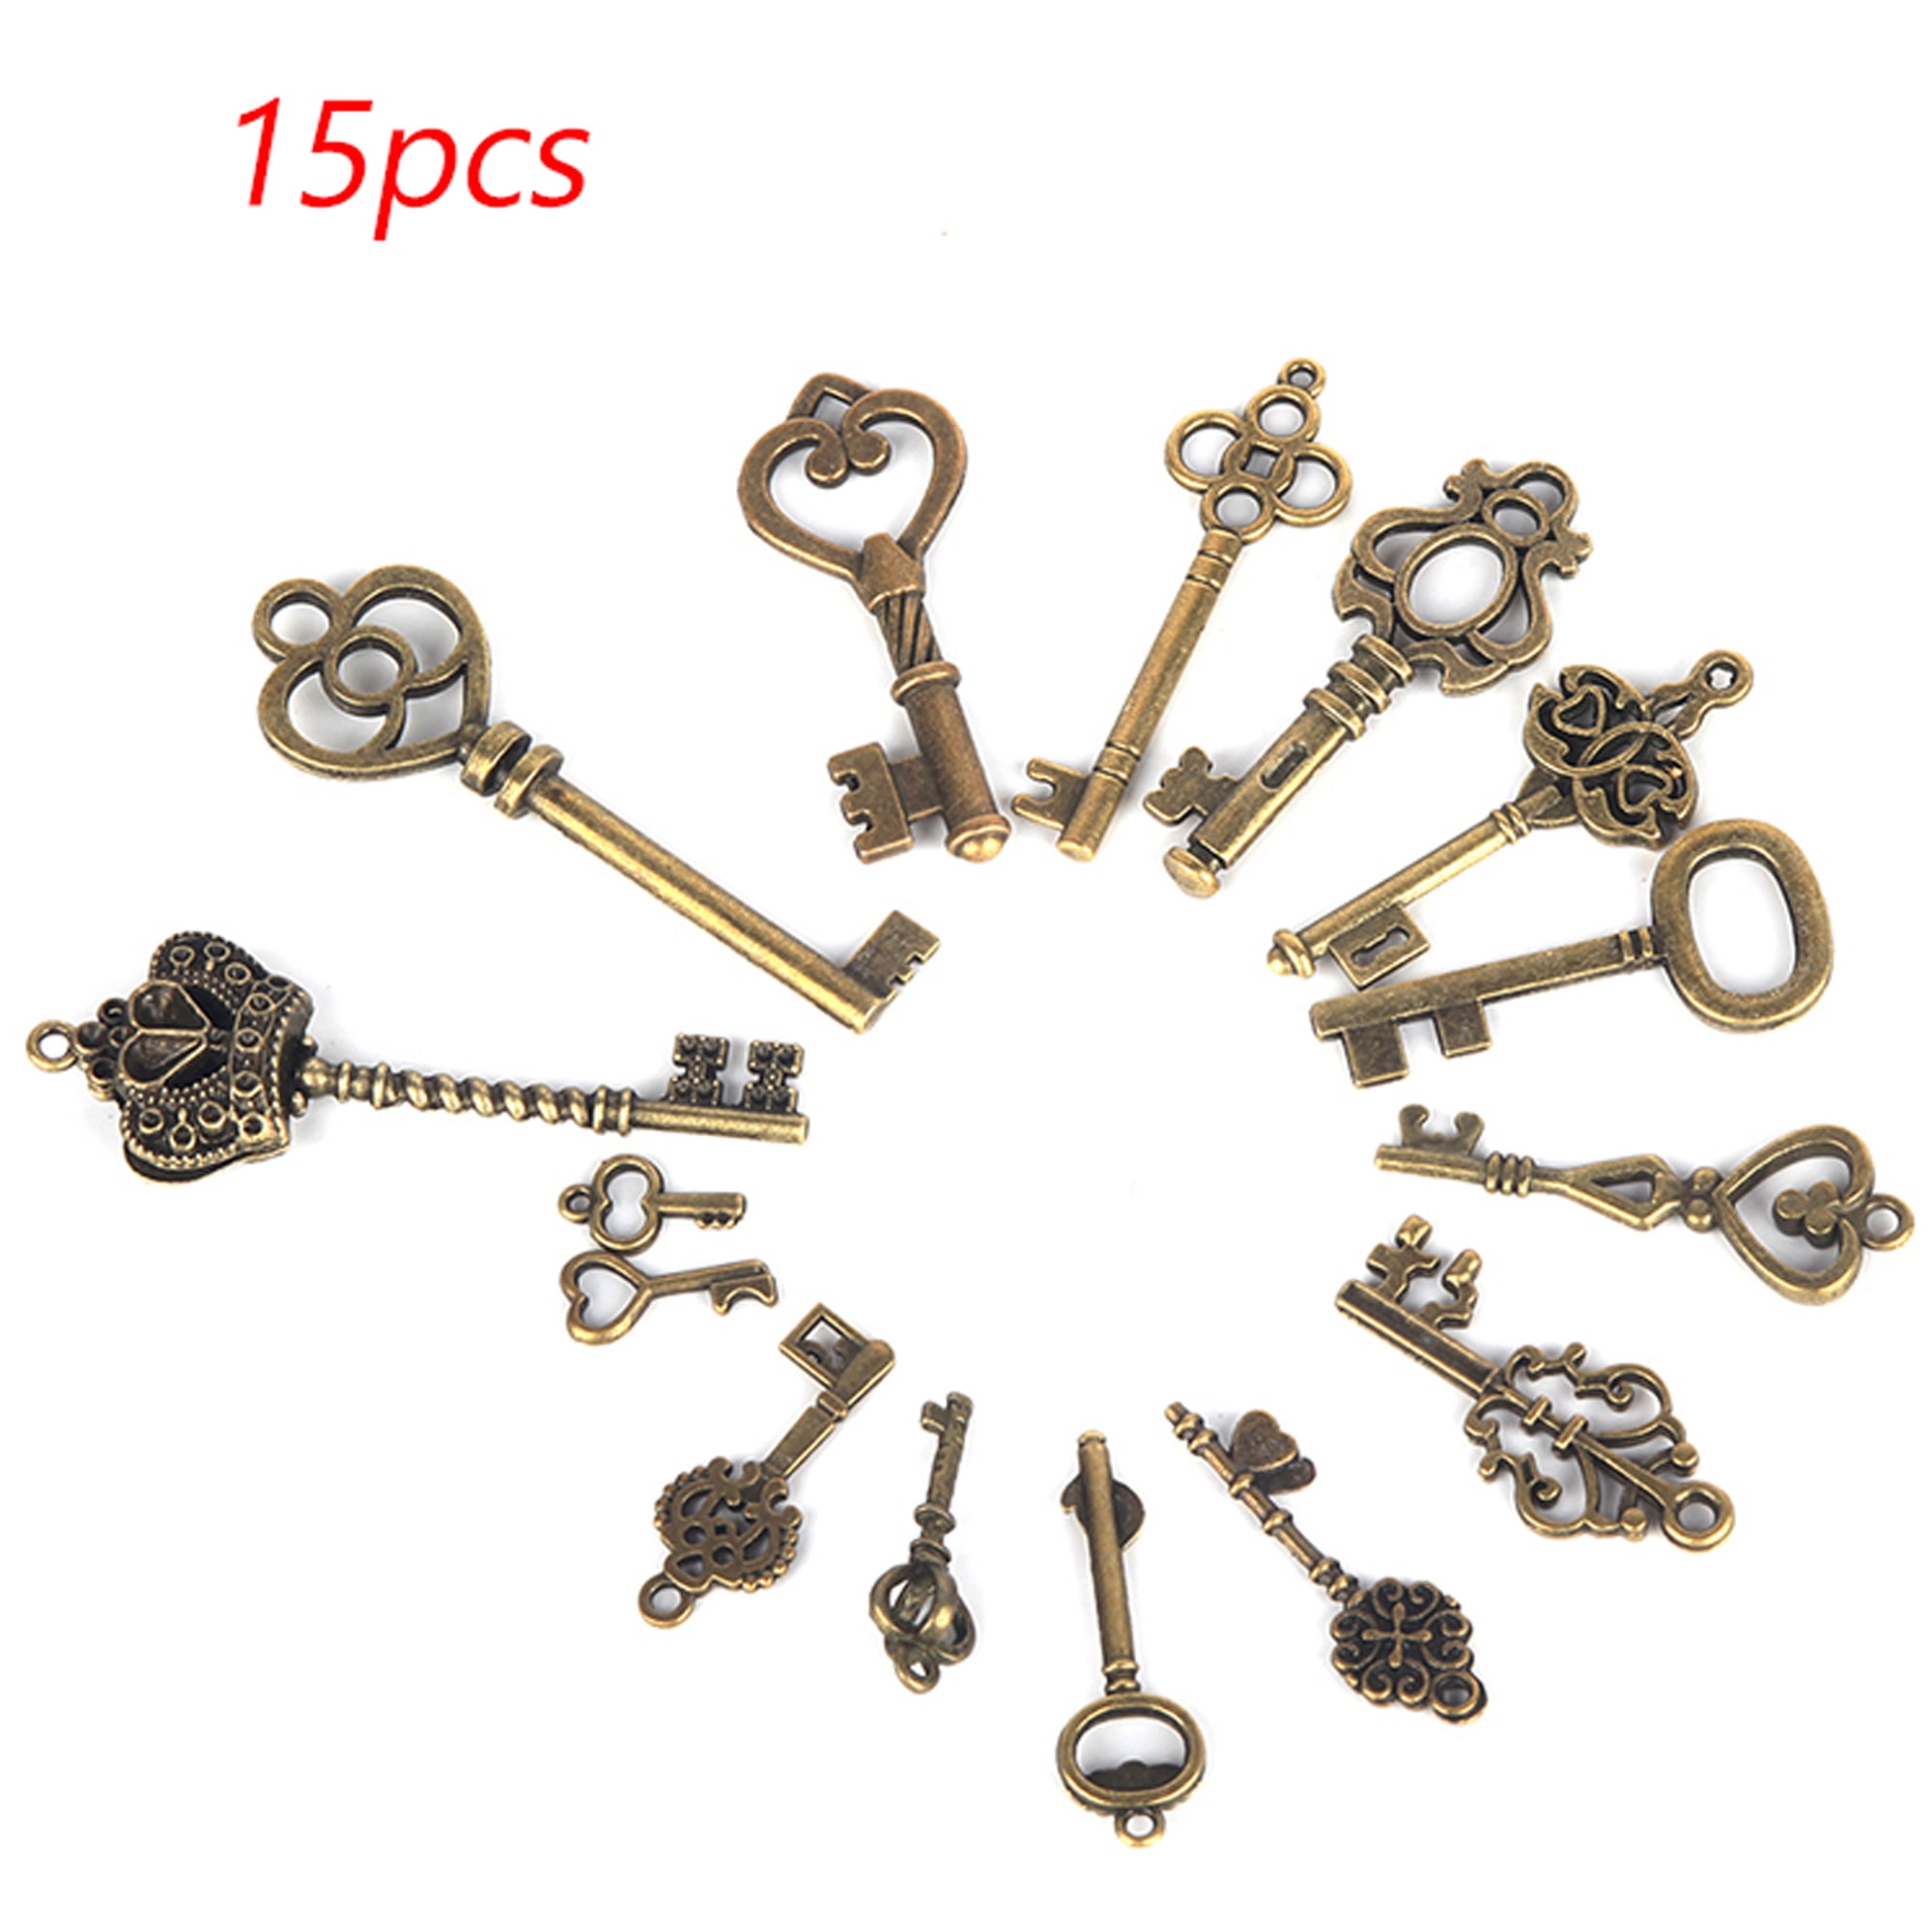 Antique Style Key Cabinet Lock Keys Brass Keys 